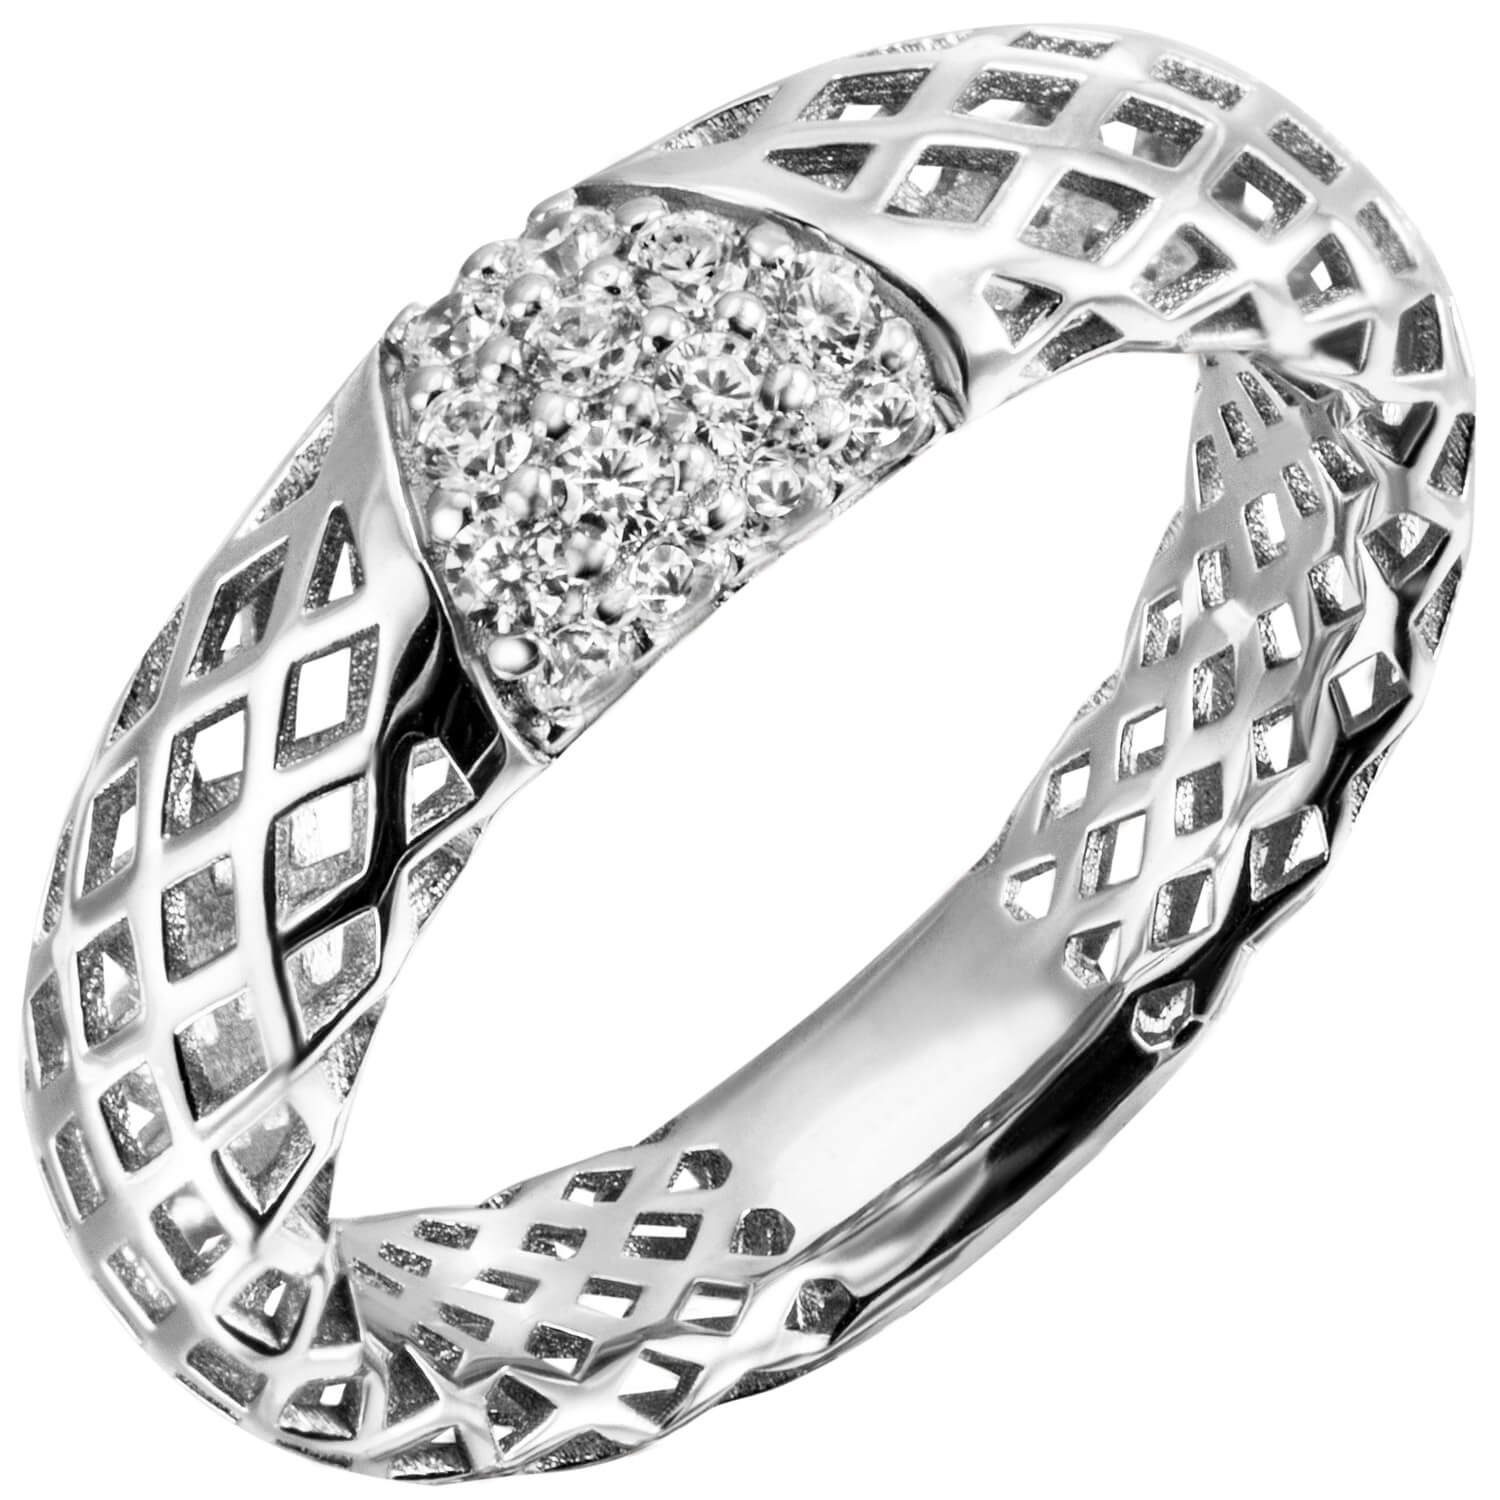 Schmuck Krone Silberring Ring mit 14 Zirkonia weiß 925 Silber rhodiniert Damenring glänzend Netz-Muster, Silber 925